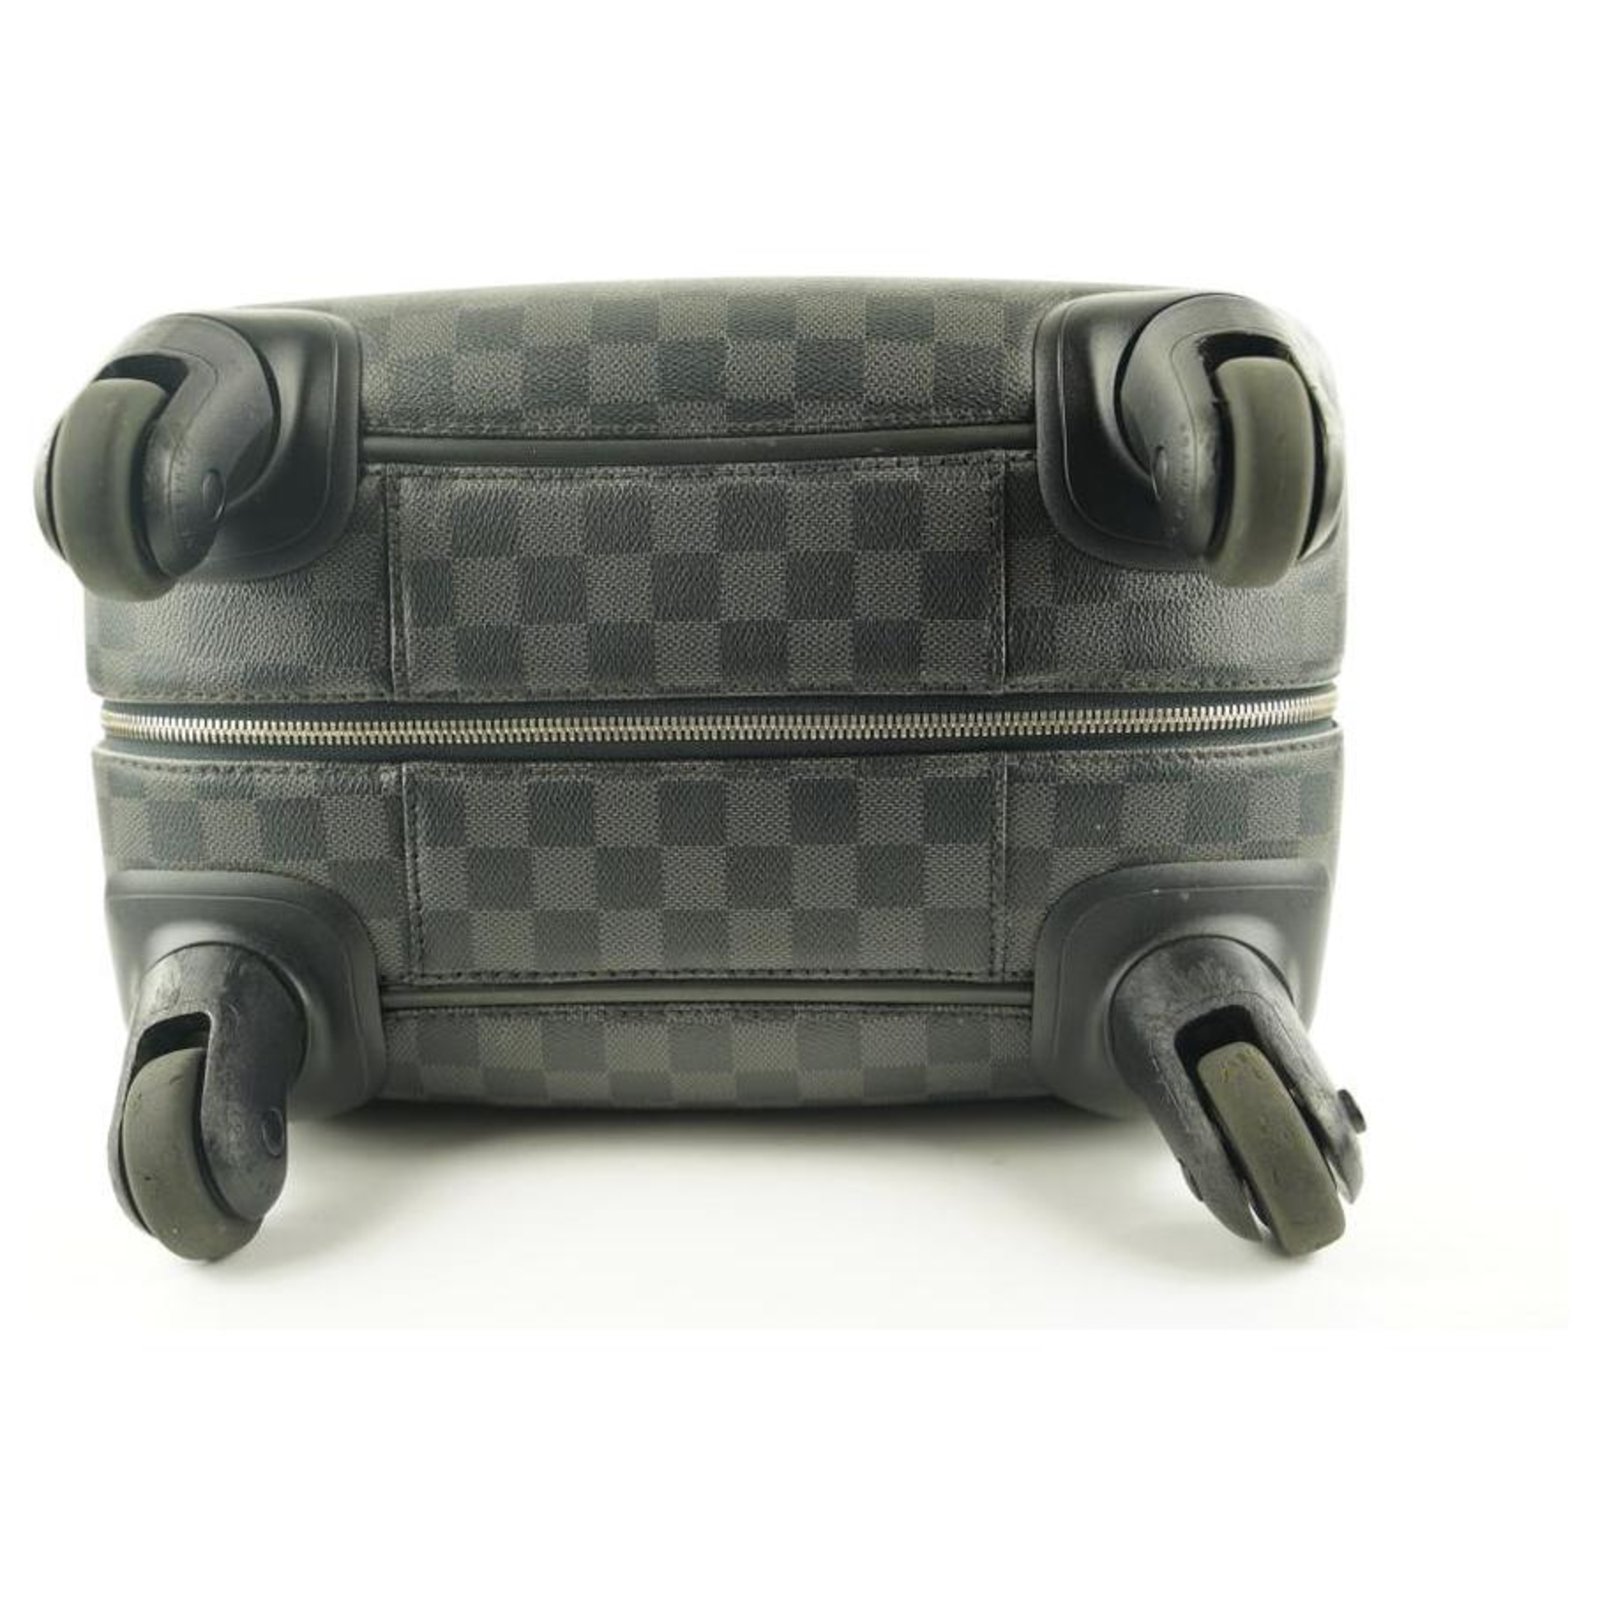 Louis Vuitton - Zephyr 55 - Damier Graphite - SHW - Rolling Suitcase